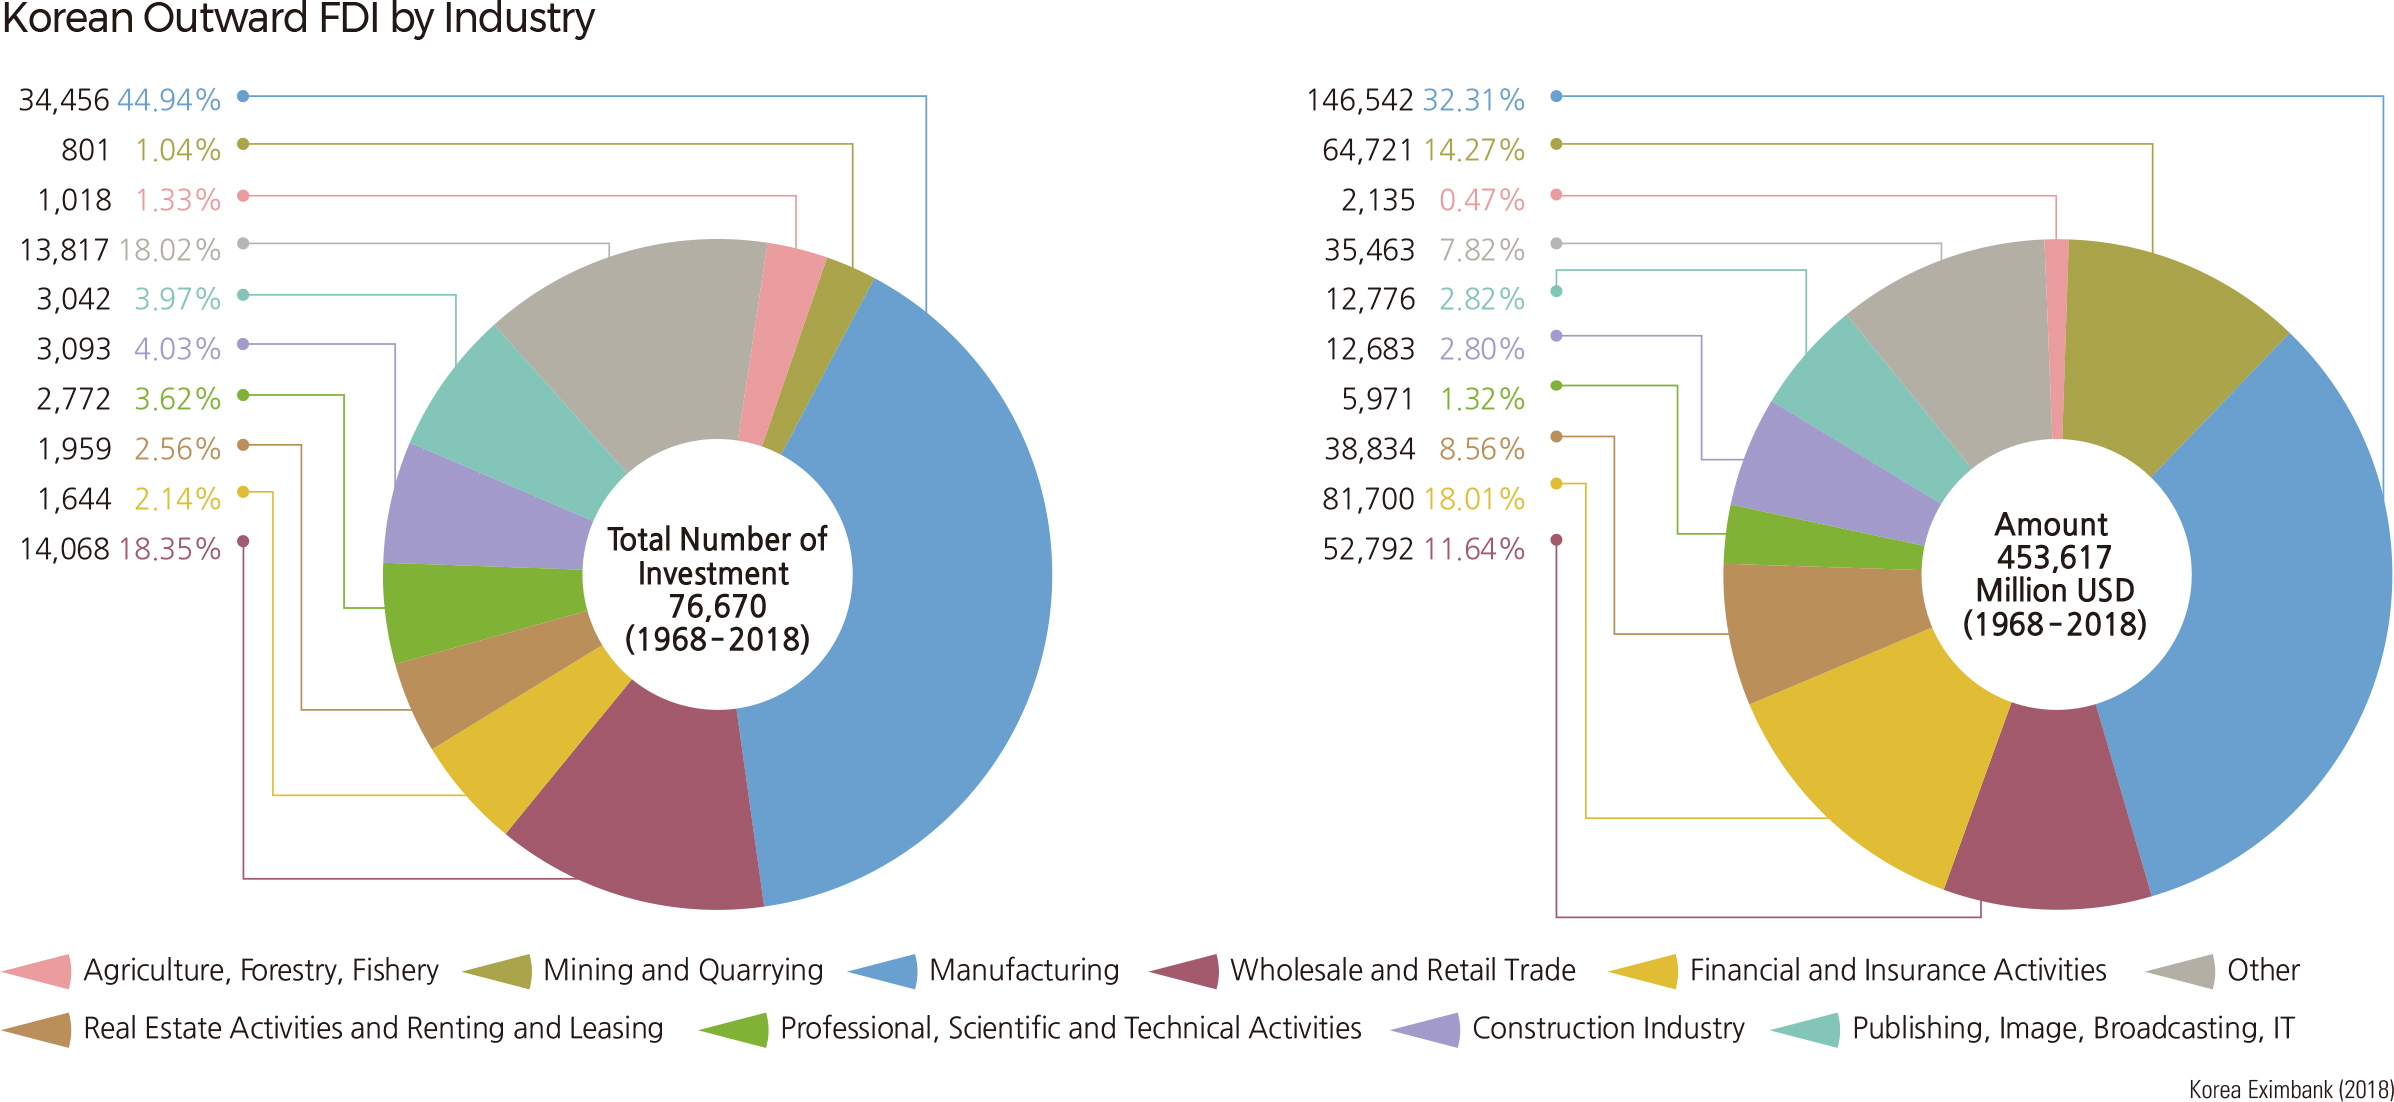 Korean Outward FDI by Industry